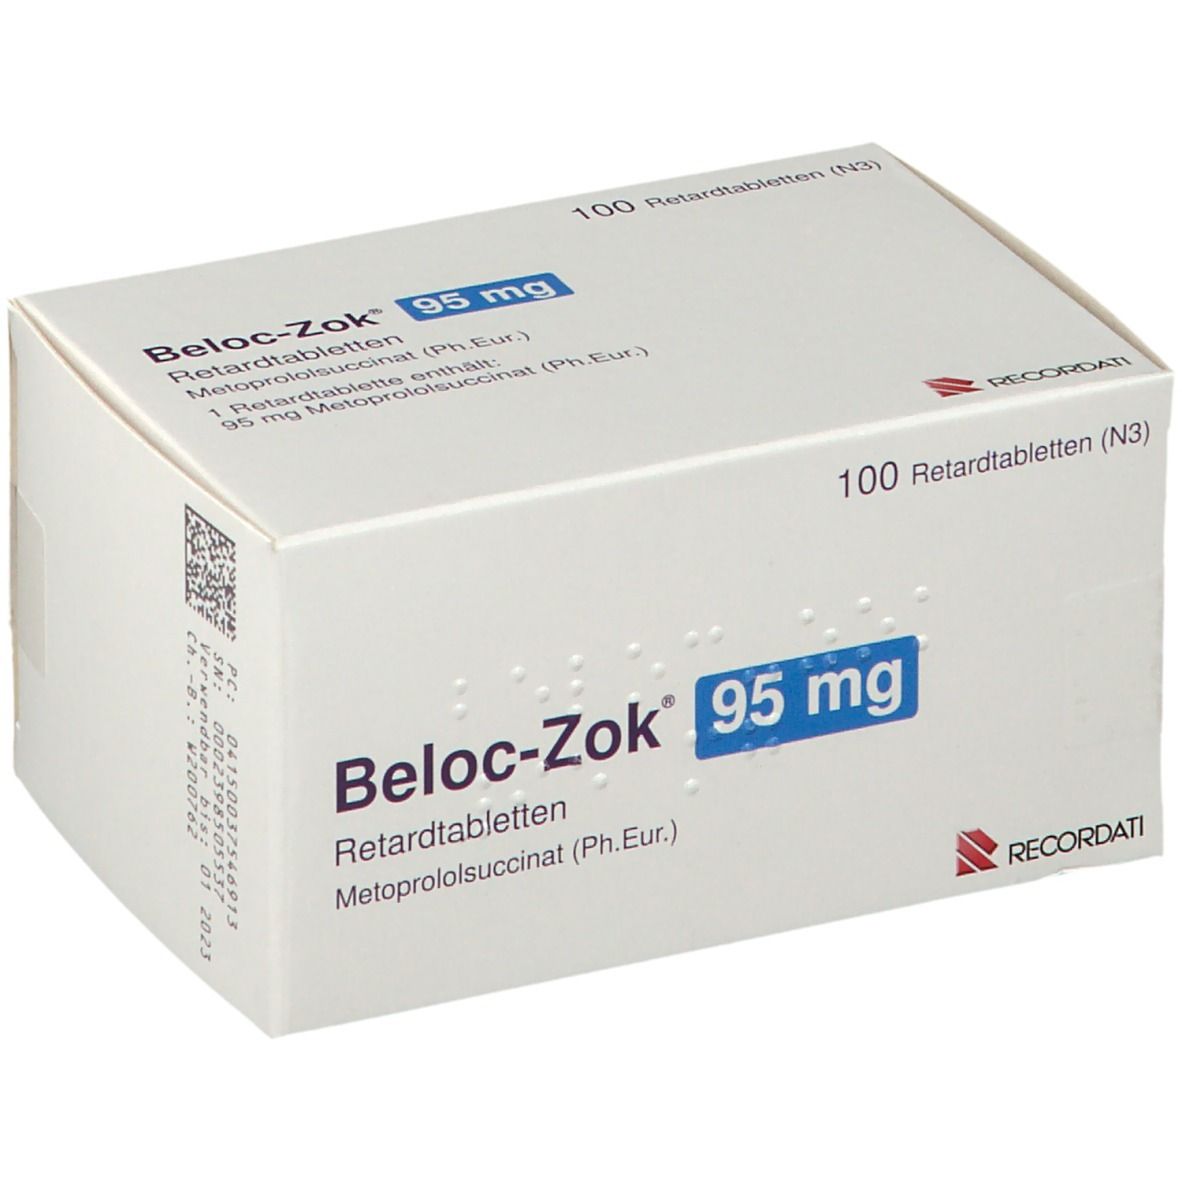 Beloc-Zok® 95 mg